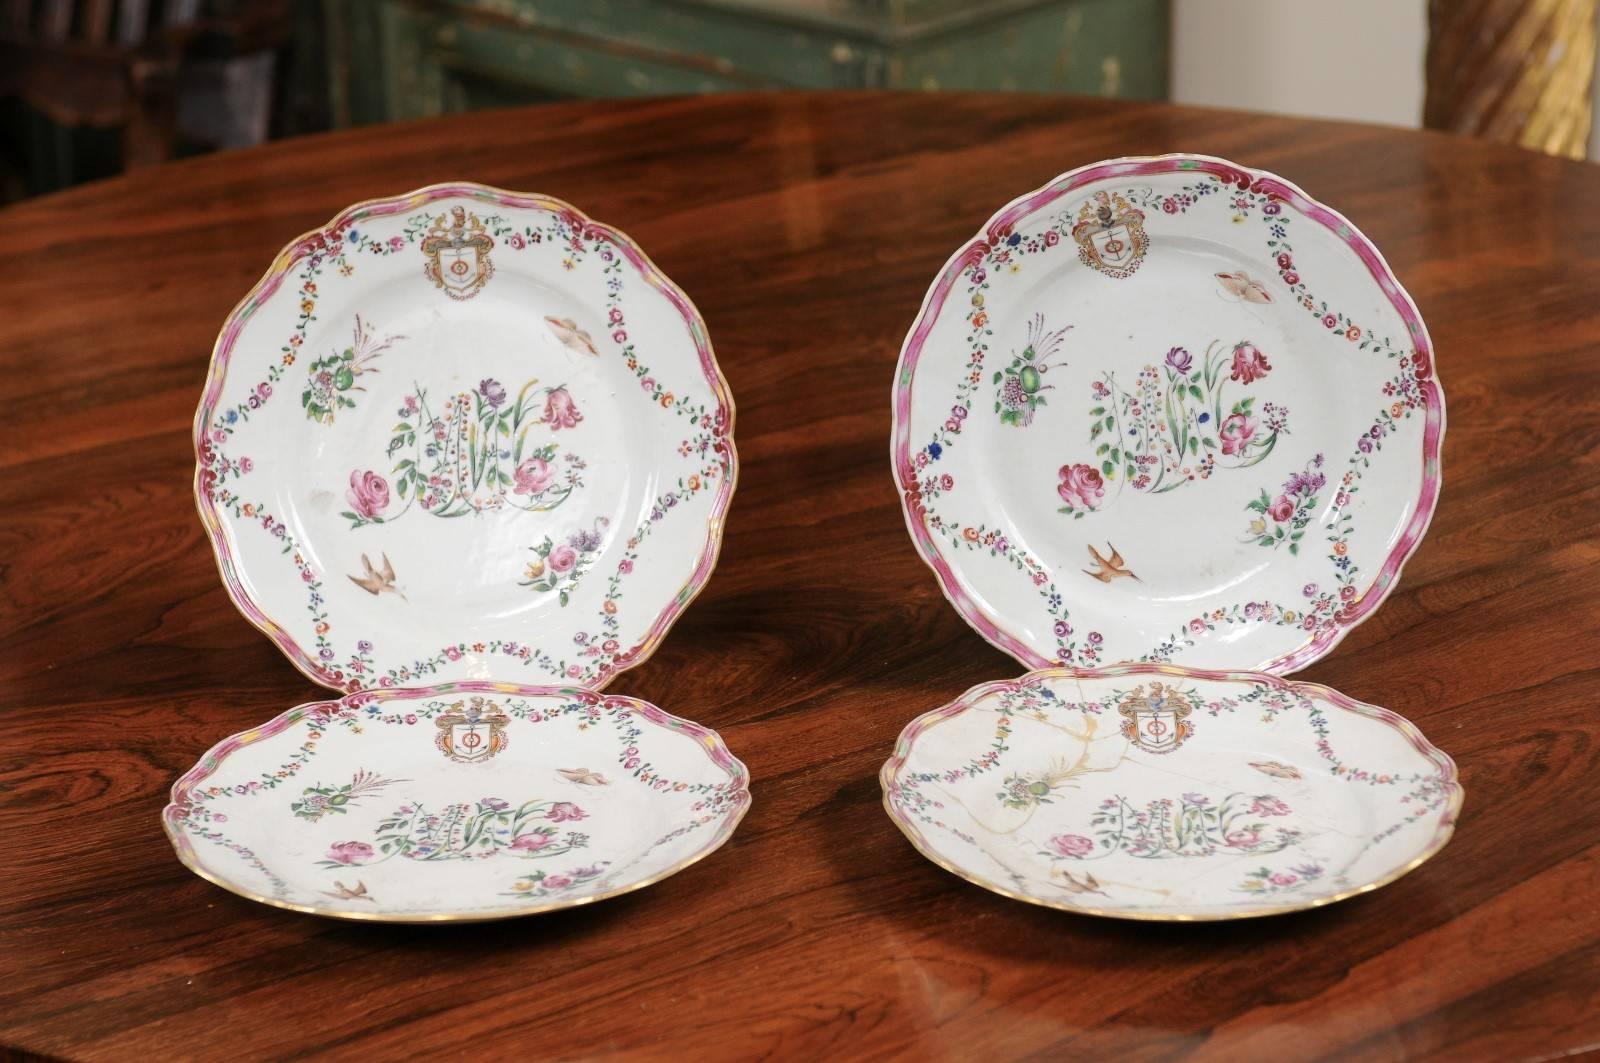 Ensemble de 4 assiettes en porcelaine d'exportation chinoise à décor floral et armorial, vers 1760